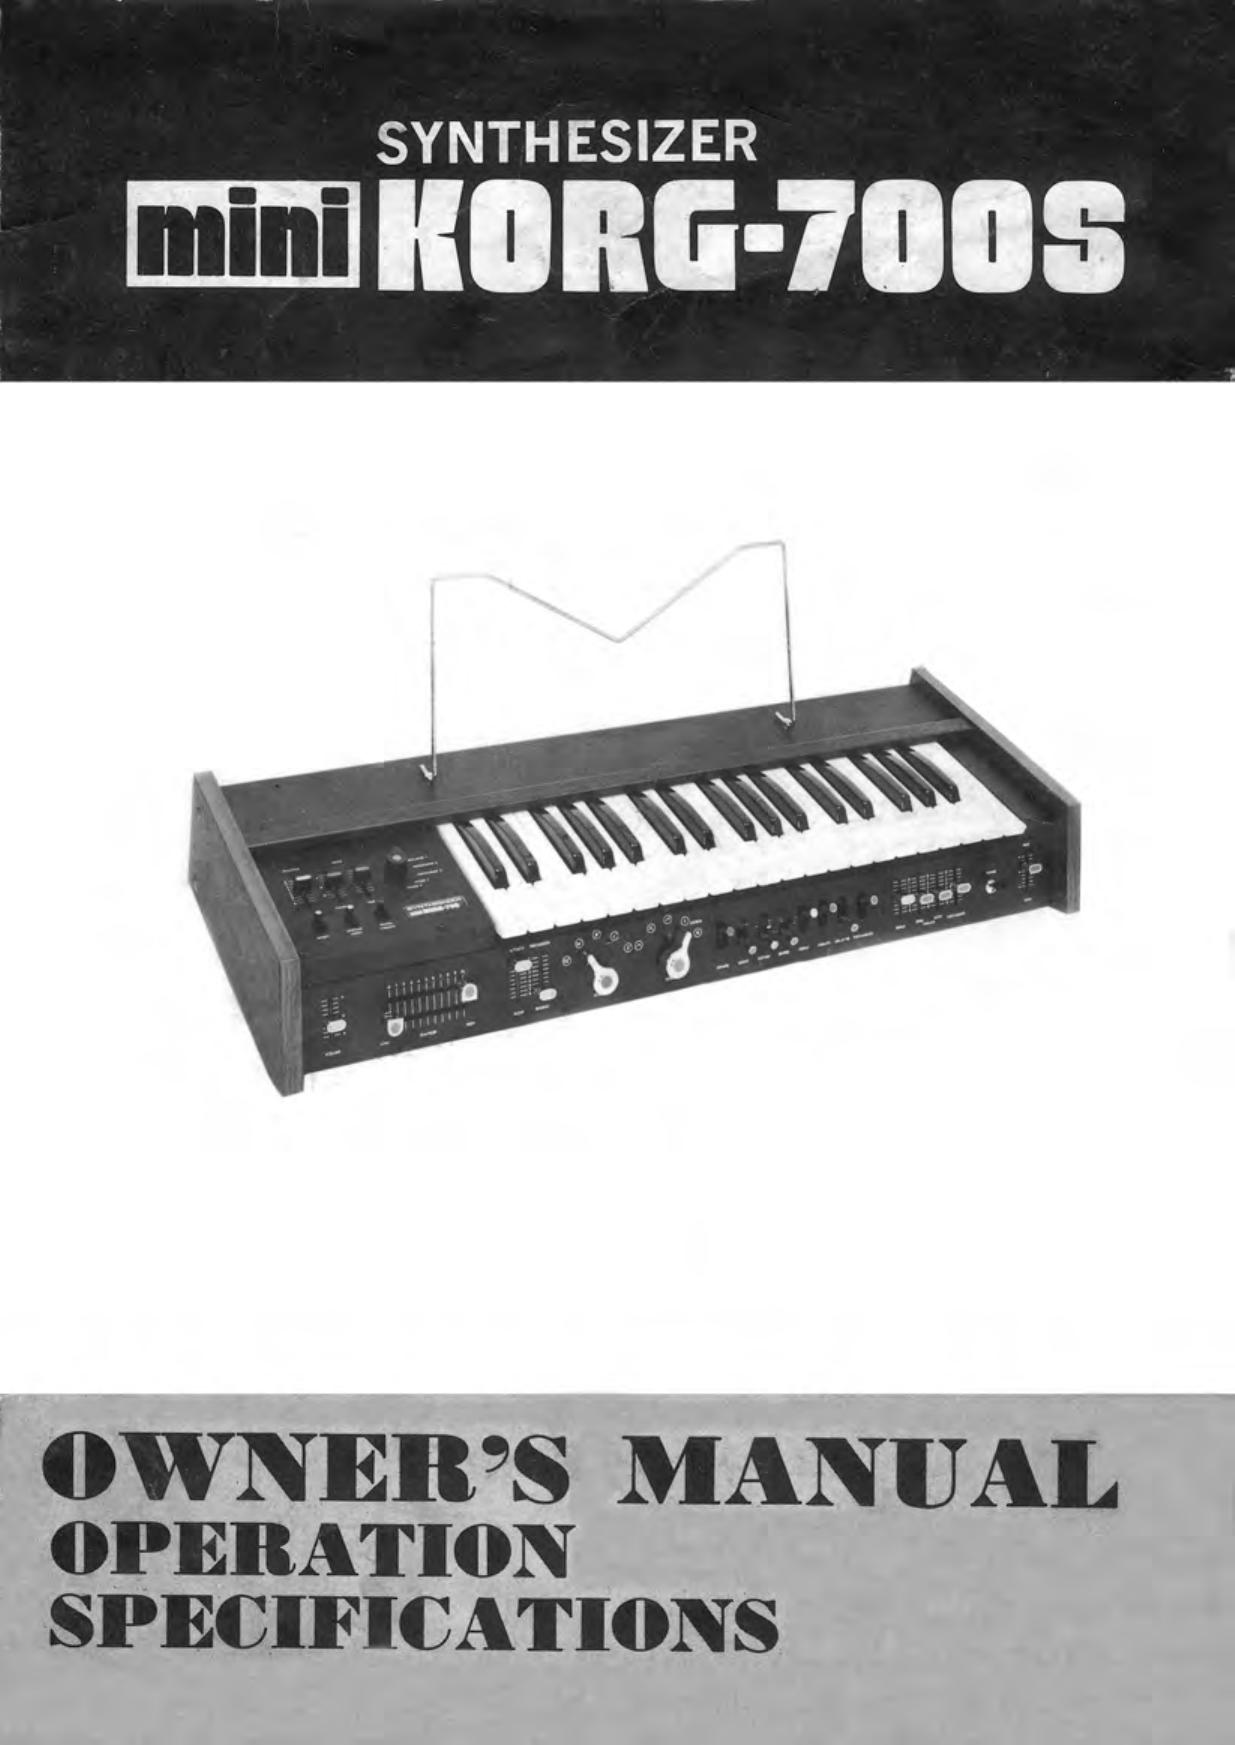 Korg KORG-700S Electronic Keyboard User Manual